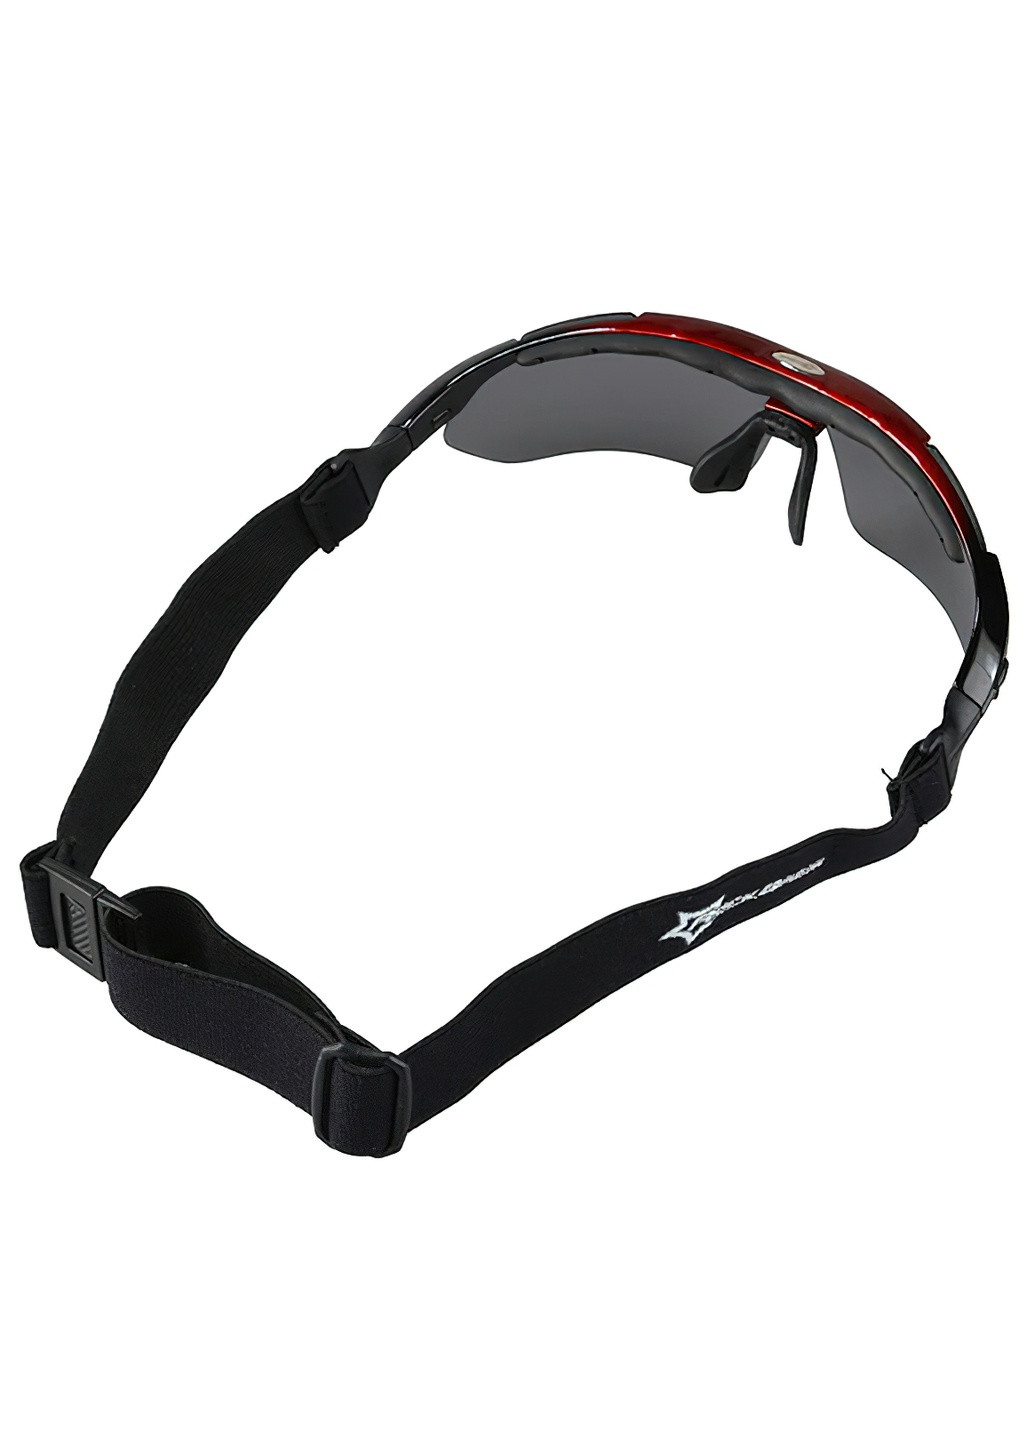 Велоокуляри рокброс 0089 / Велосипедні окуляри / Спортивні поляризовані окуляри для велосипеда для чоловіків і жінок Rockbros (252955892)